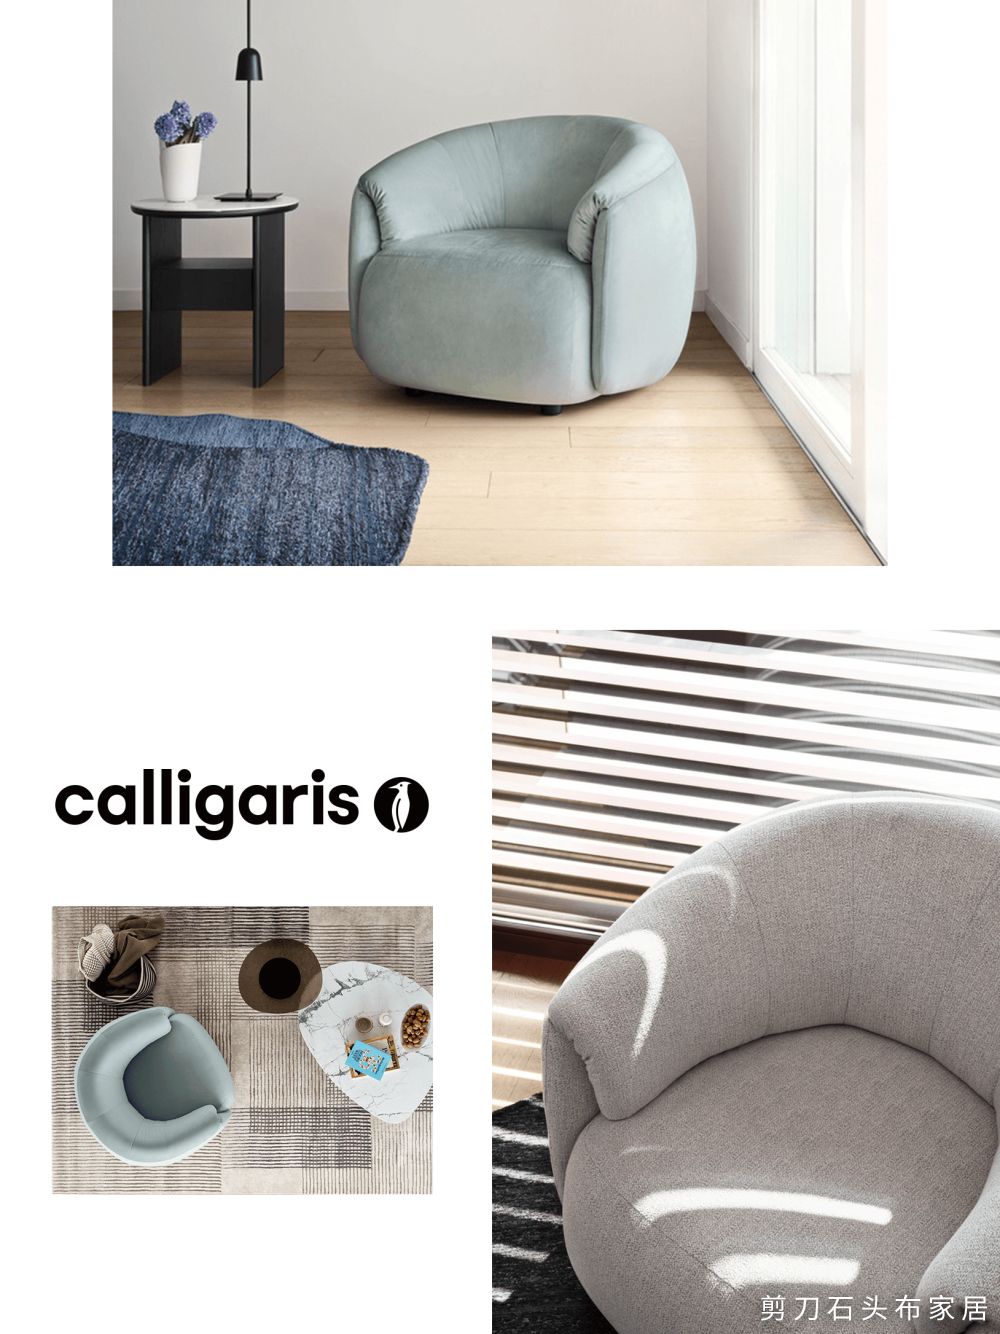 意大利进口家具品牌CALLIGARIS 2022新品，超高颜值！